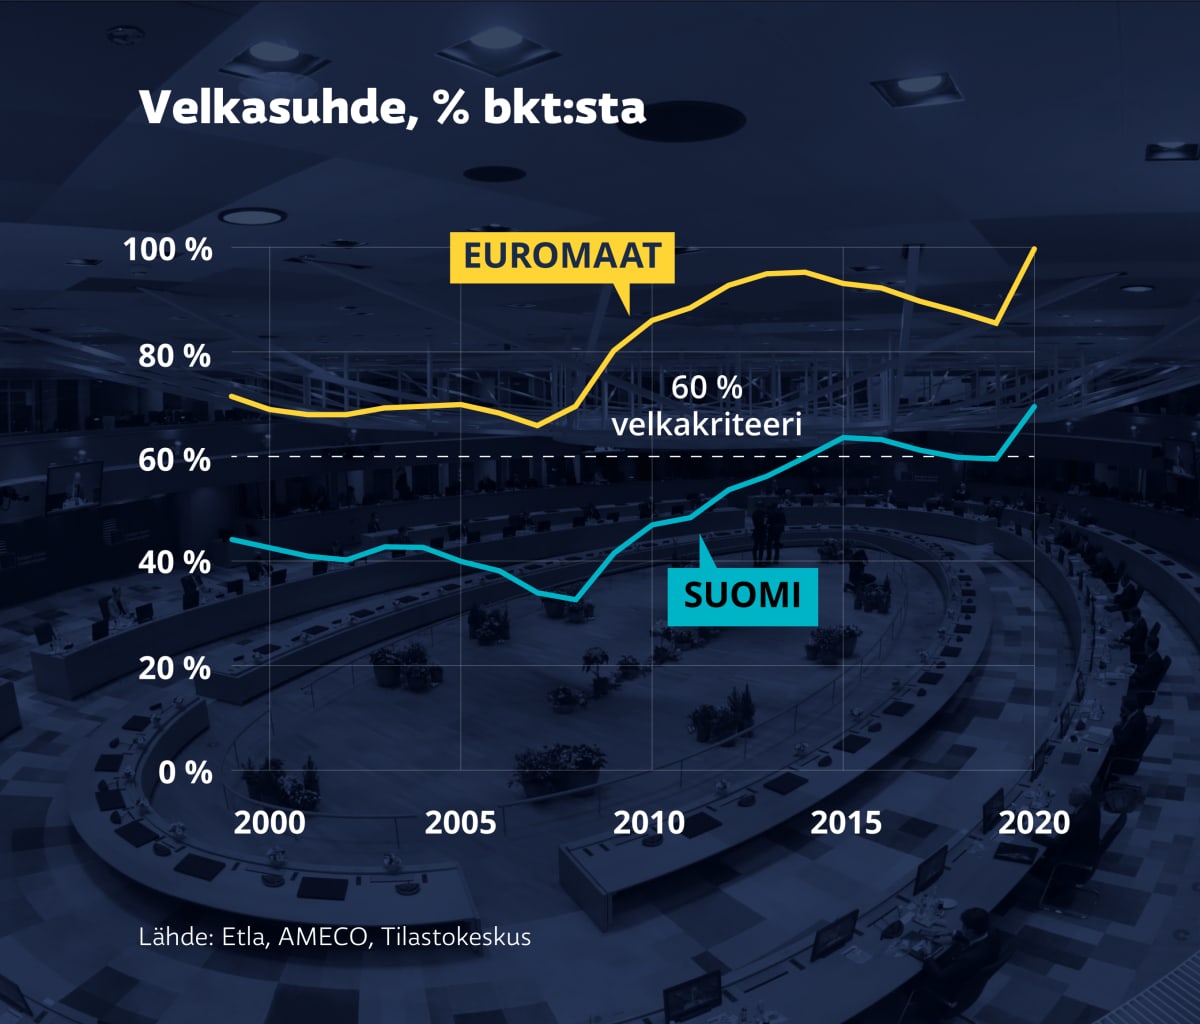 Grafiikka näyttää euromaiden ja Suomen velkasuhteen ja 60 % velkakriteerin. Euromaiden velkasuhde on Suomea korkeammalla.